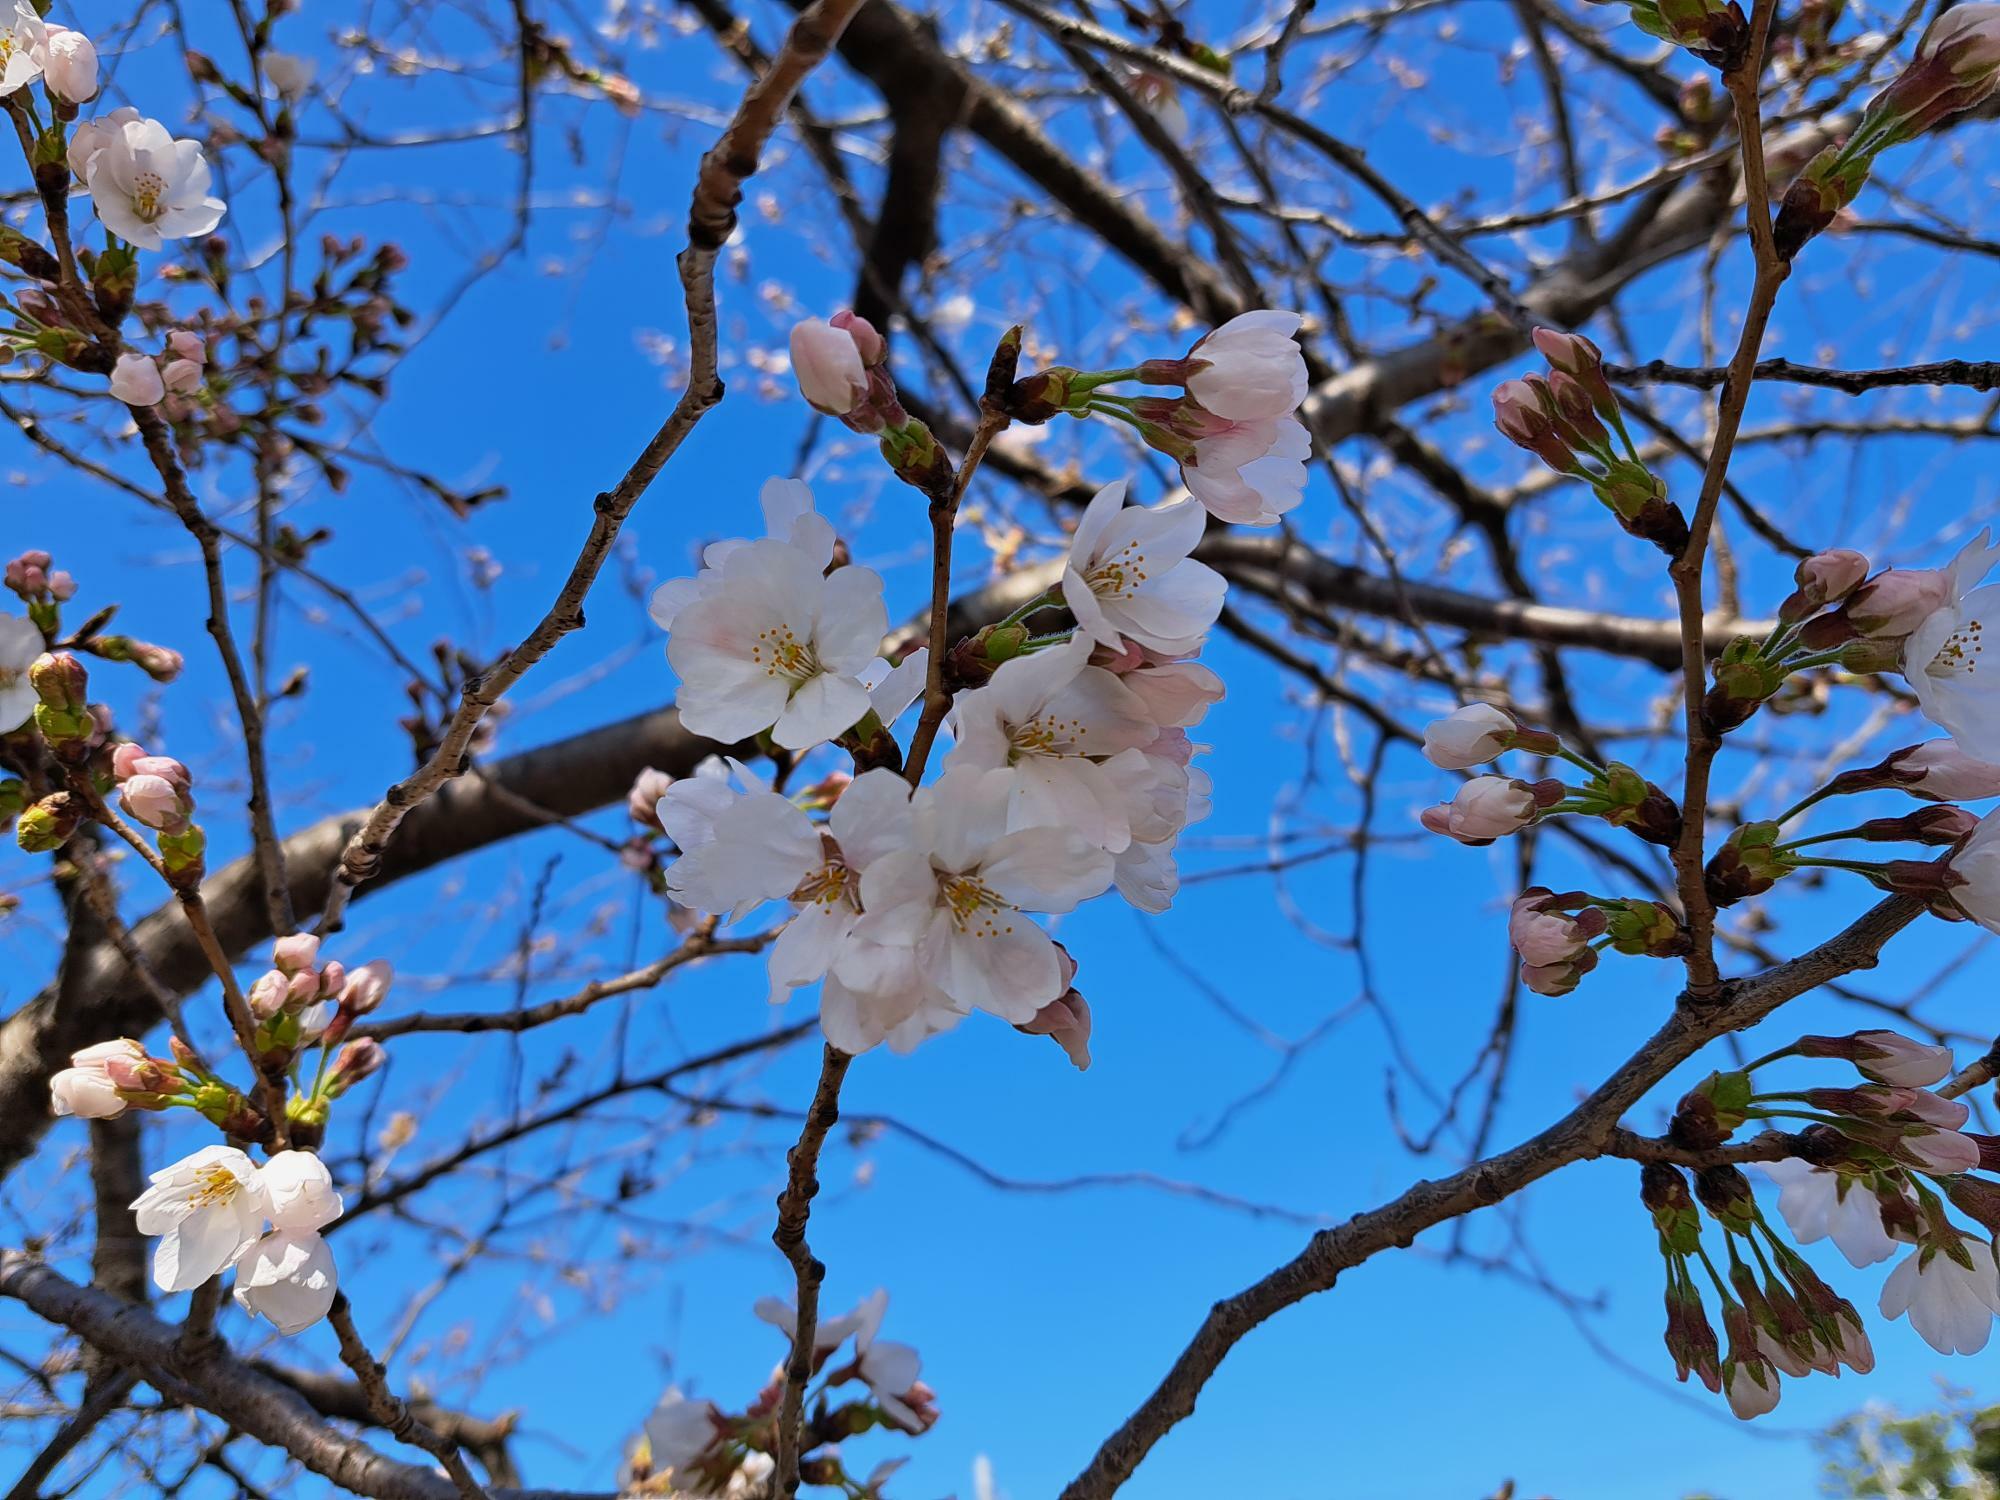 真間川の桜が咲き始めています。